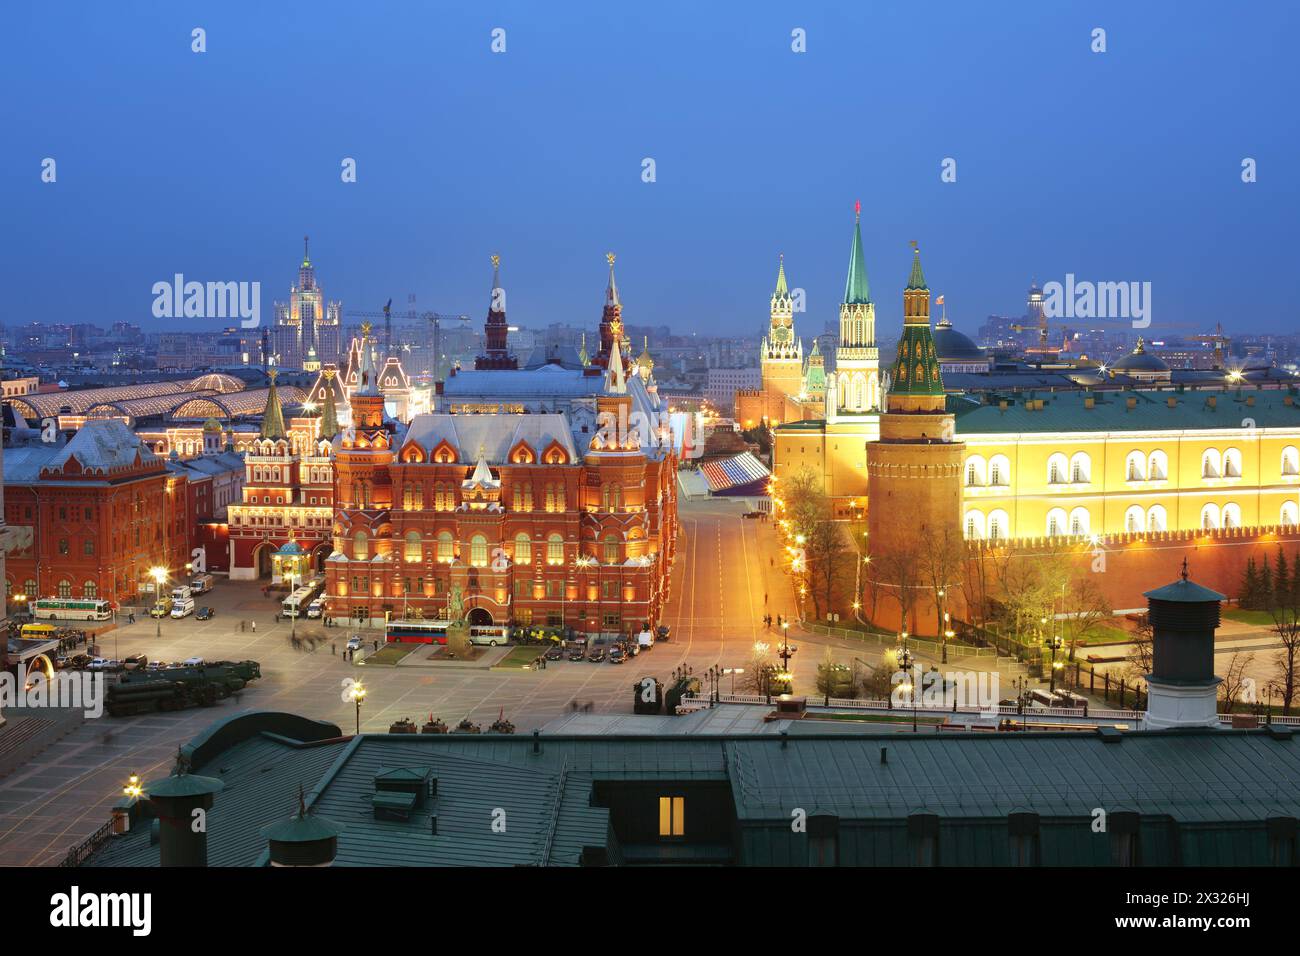 MOSCA - 3 MAGGIO: Vista notturna del Museo storico e del Cremlino dal ristorante O2 Lounge, 3 maggio 2013, Mosca, Russia. O2 Lounge - un elegante Foto Stock